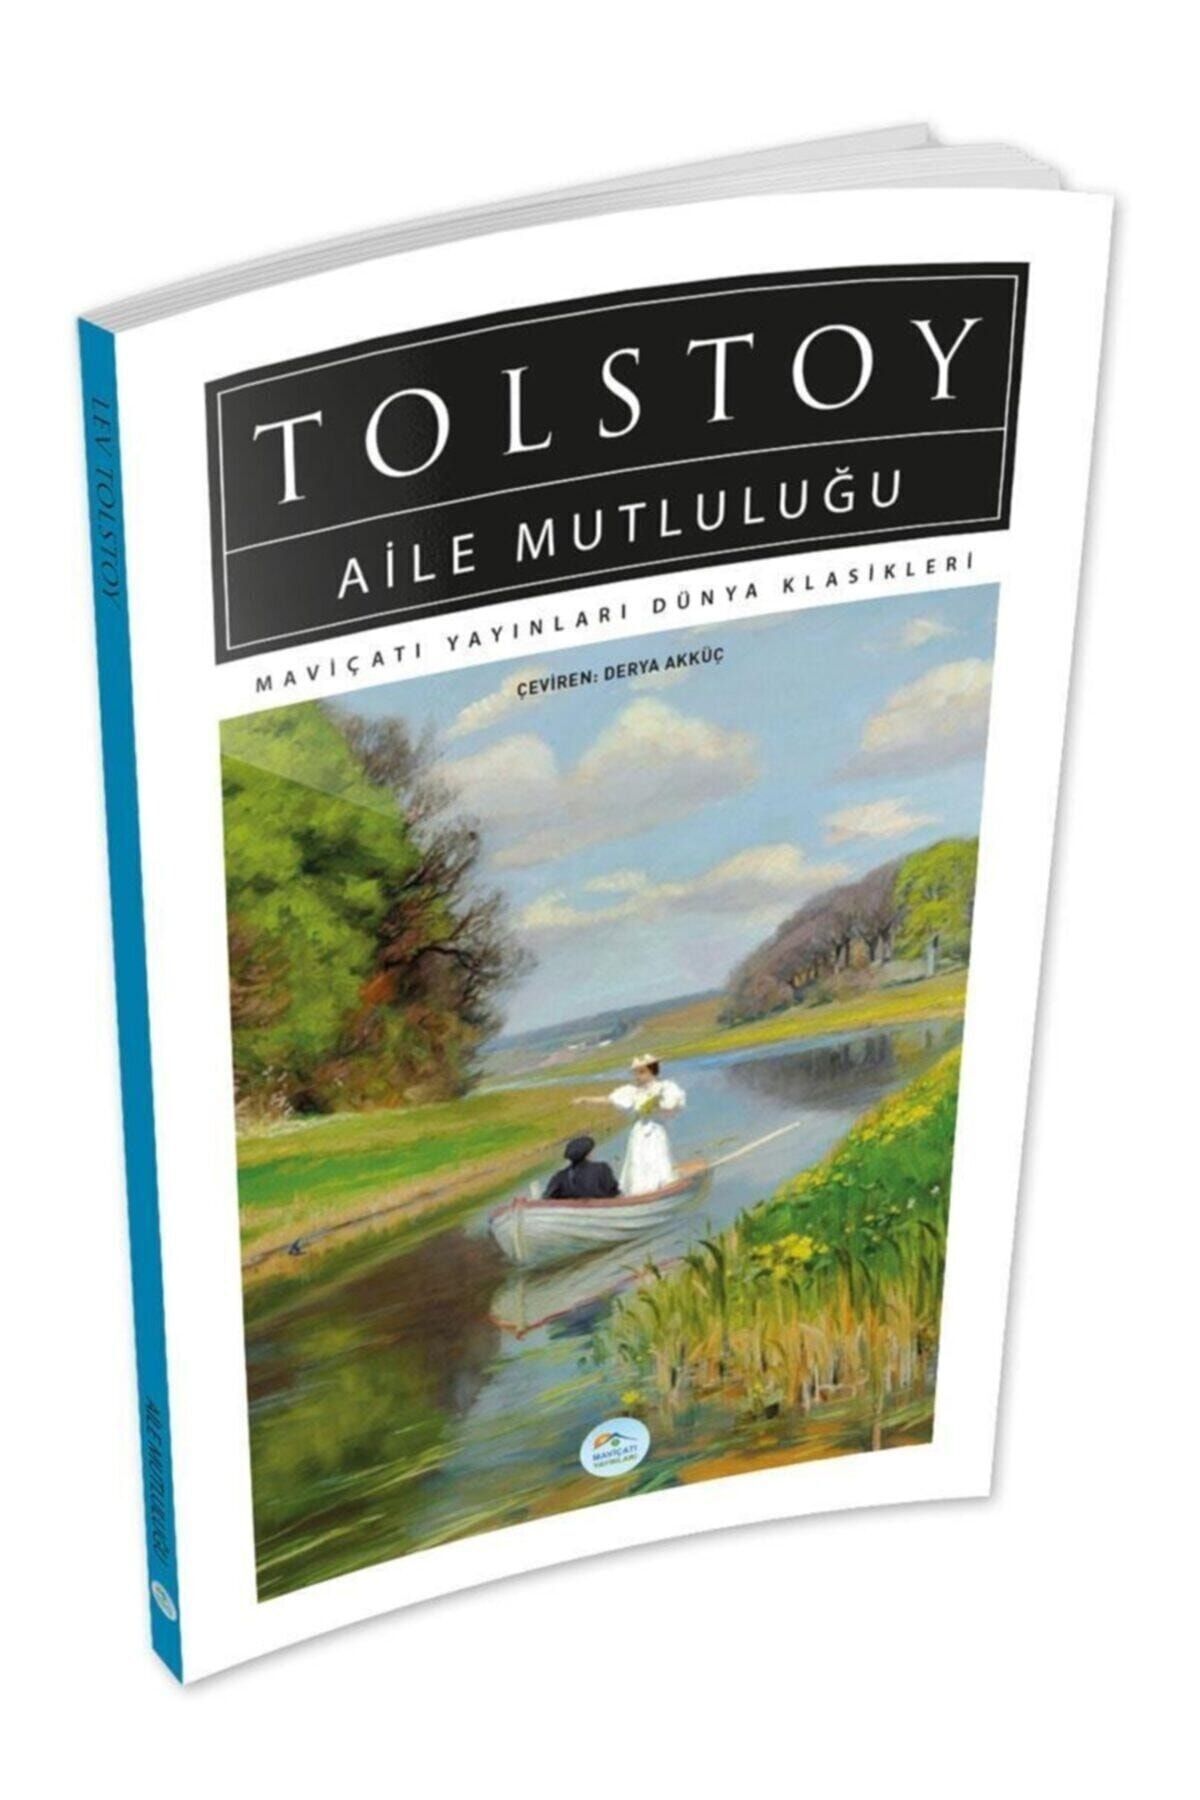 Mavi Çatı Yayınları Aile Mutluluğu - Tolstoy - Maviçatı Dünya Klasikleri